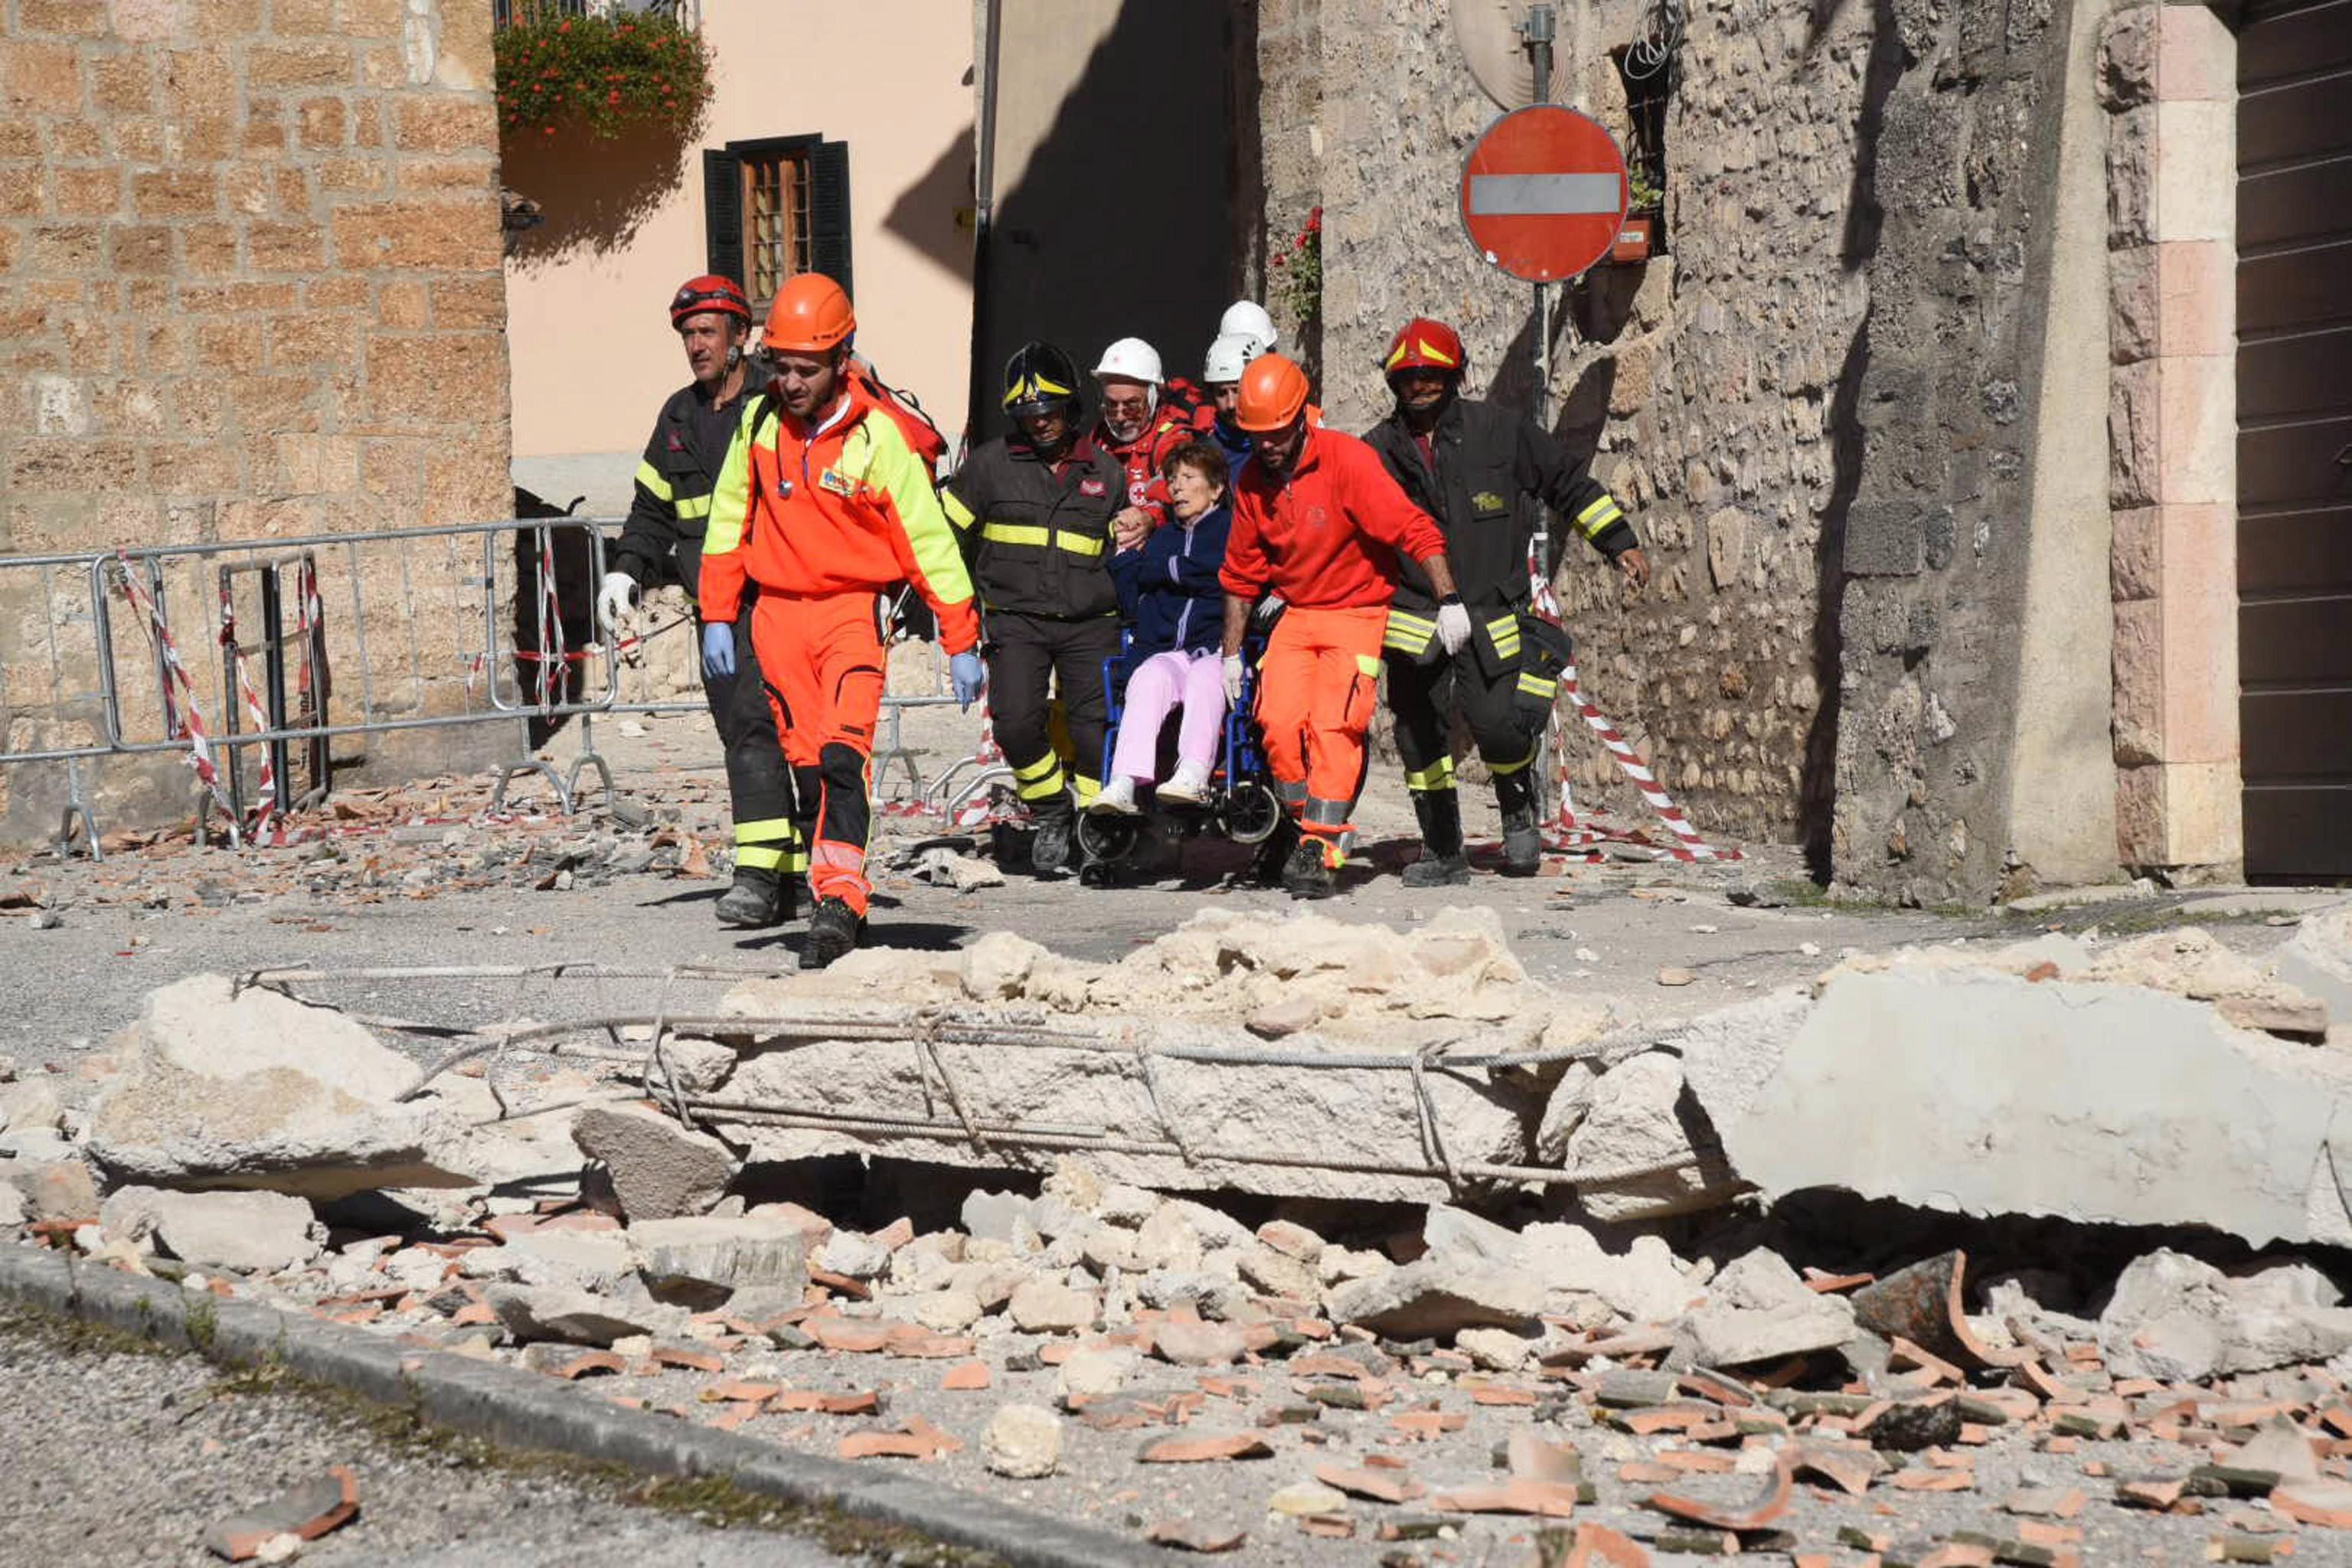 Norcia, 2016. október 30. Tûzoltók kísérnek egy kerekesszékes idõs nõt az utcán a közép-olaszországi Norciában 2016. október 30-án, miután a reggeli órákban Richter skála szerinti 6,5-ös erõsségû földrengés rázta meg a térséget. A földmozgás miatt, amelynek epicentruma Norcia és a tõle 20 kilométerre, északra fekvõ Preci között 10 kilométeres mélységben volt, súlyos károk keletkeztek és többtucatnyian megsérültek. Október 26-án három nagy erejû földrengés pusztított Olaszország középsõ régiójában. (MTI/EPA/Matteo Crocchioni)